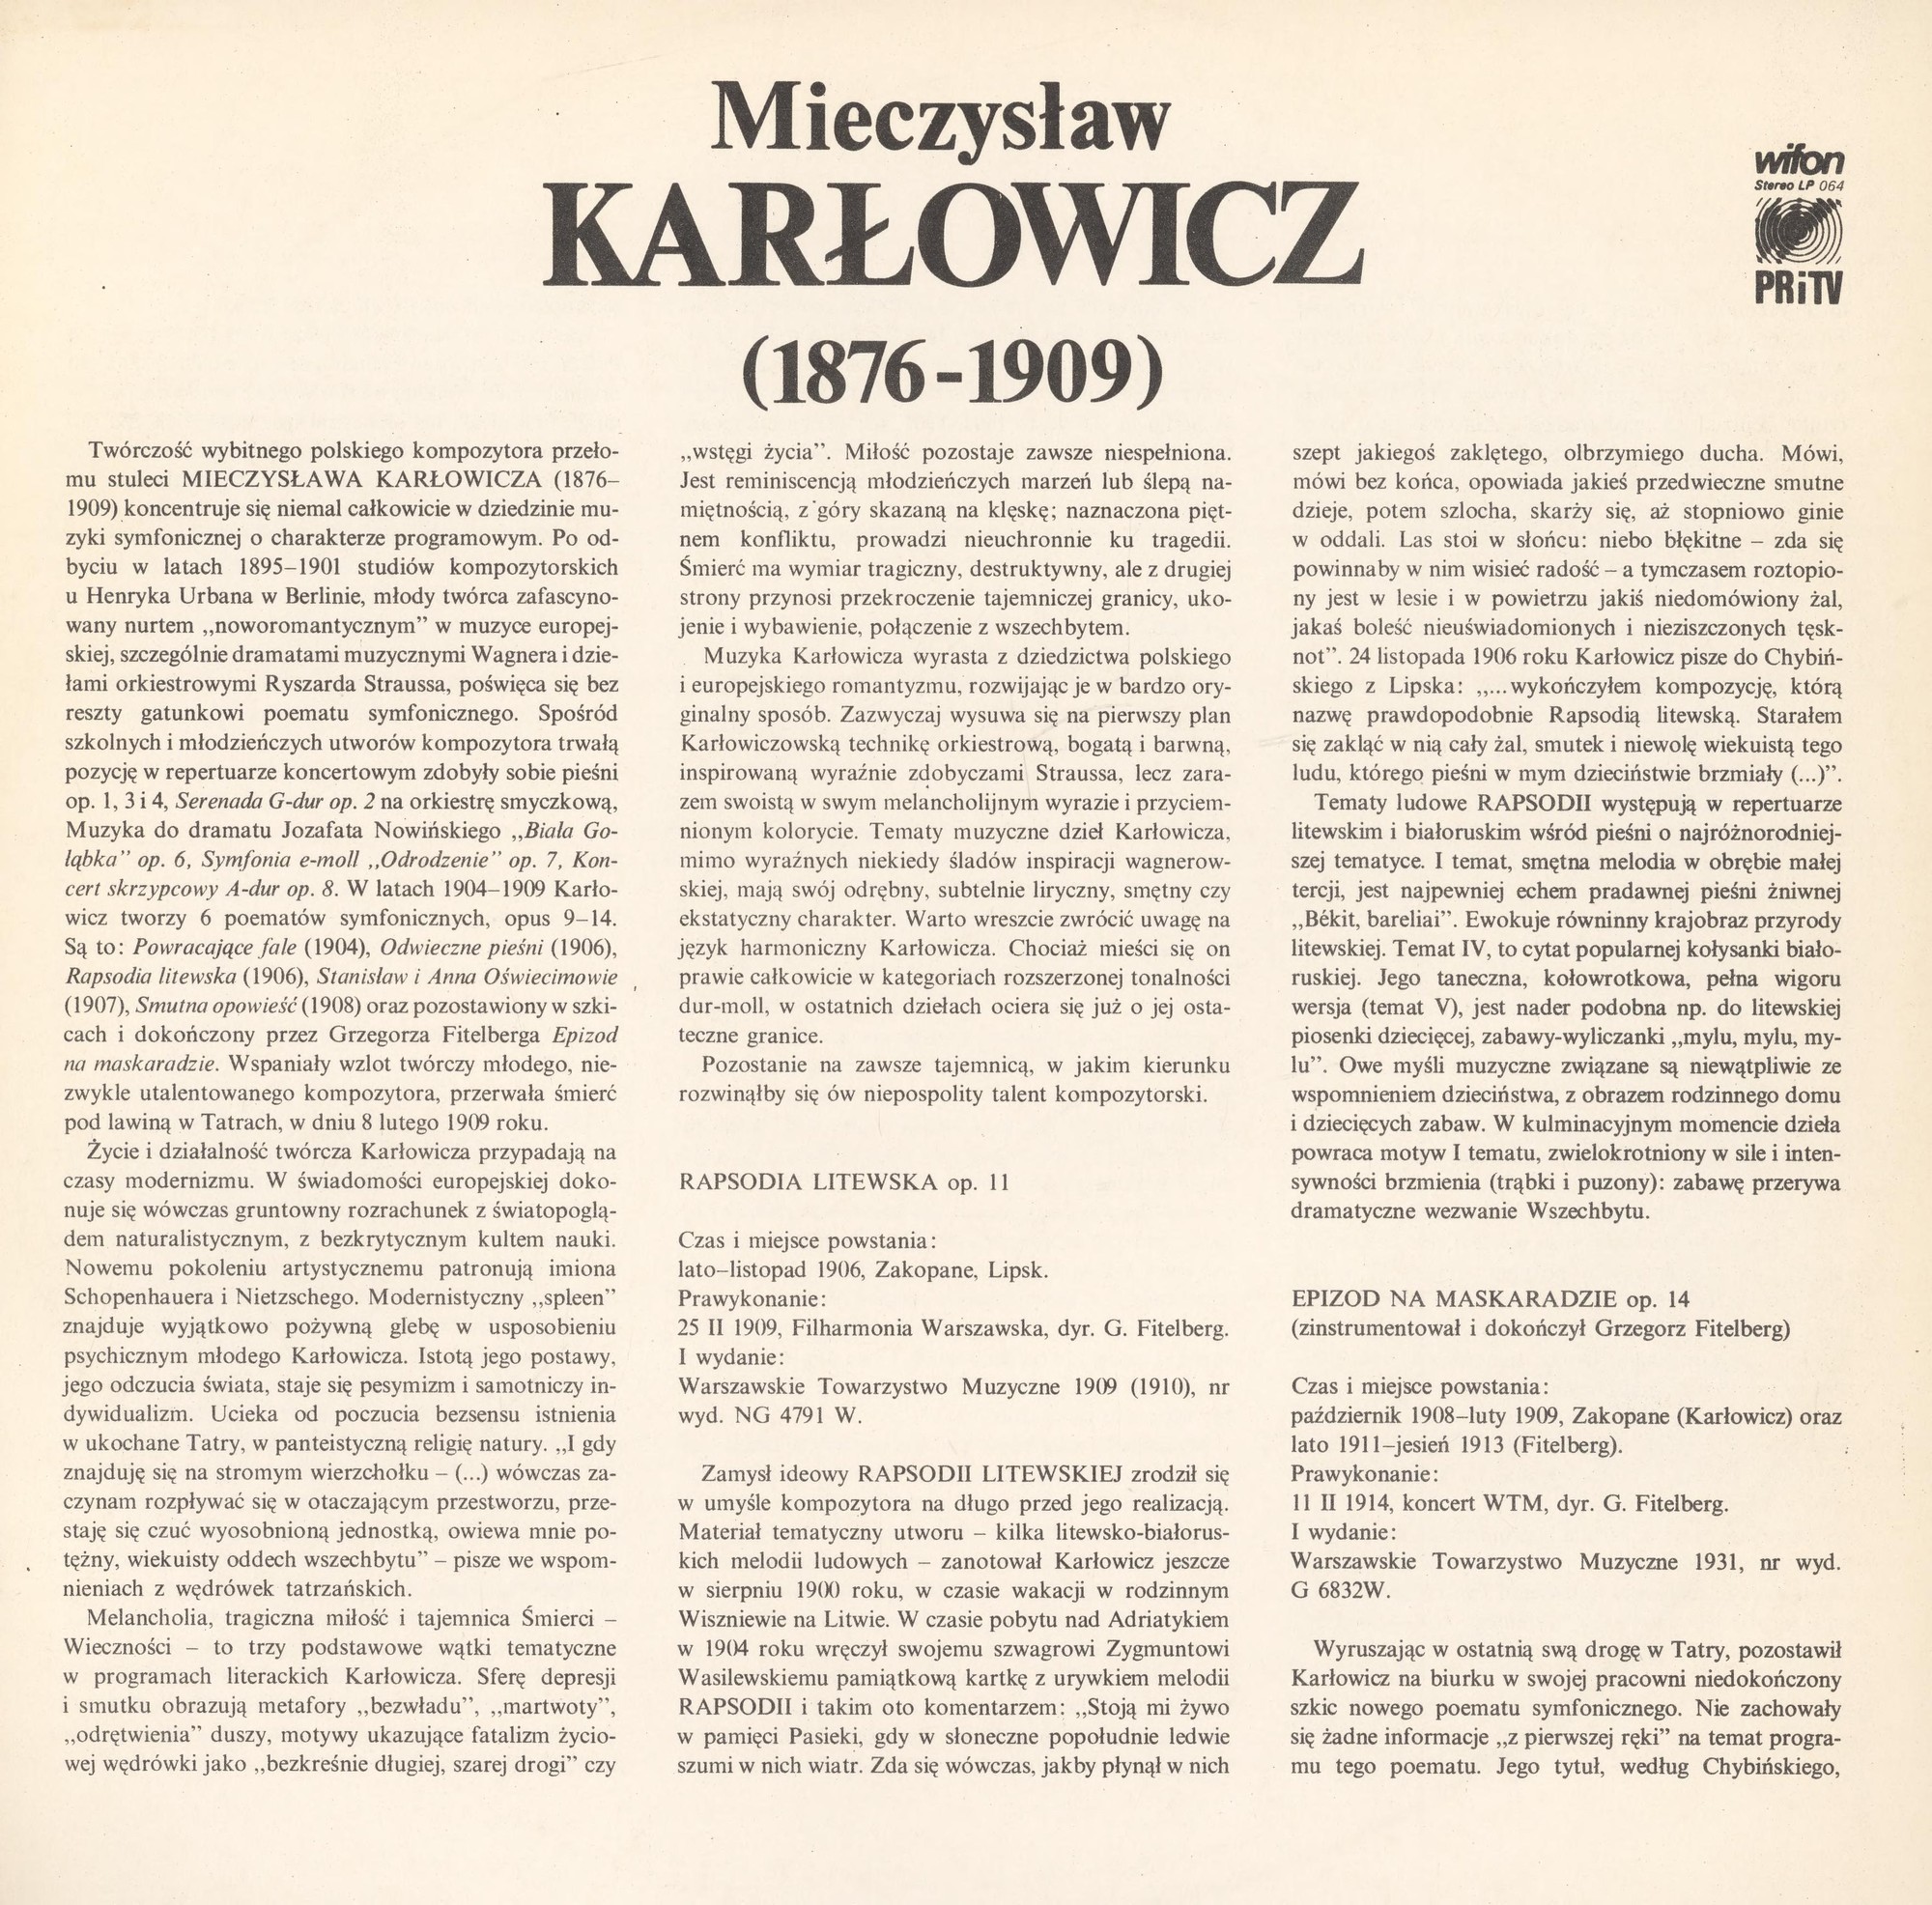 Jerzy Salwarowski / Karłowicz - Poematy Symfoniczne (2) [по заказу польской фирмы WIFON, LP 064]